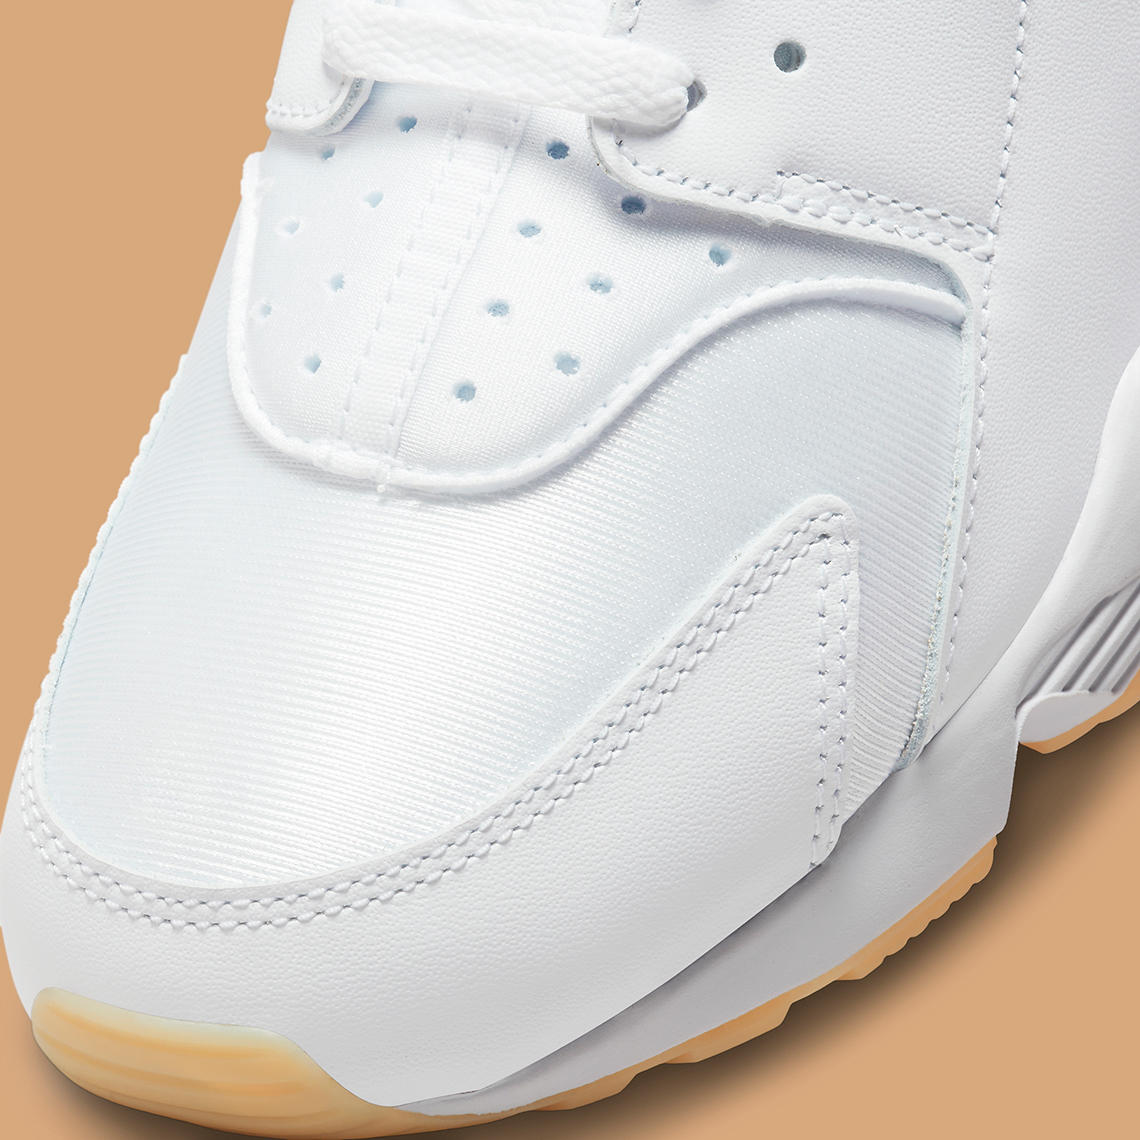 Nike Air Huarache White Gum DR9883-100 | SneakerNews.com